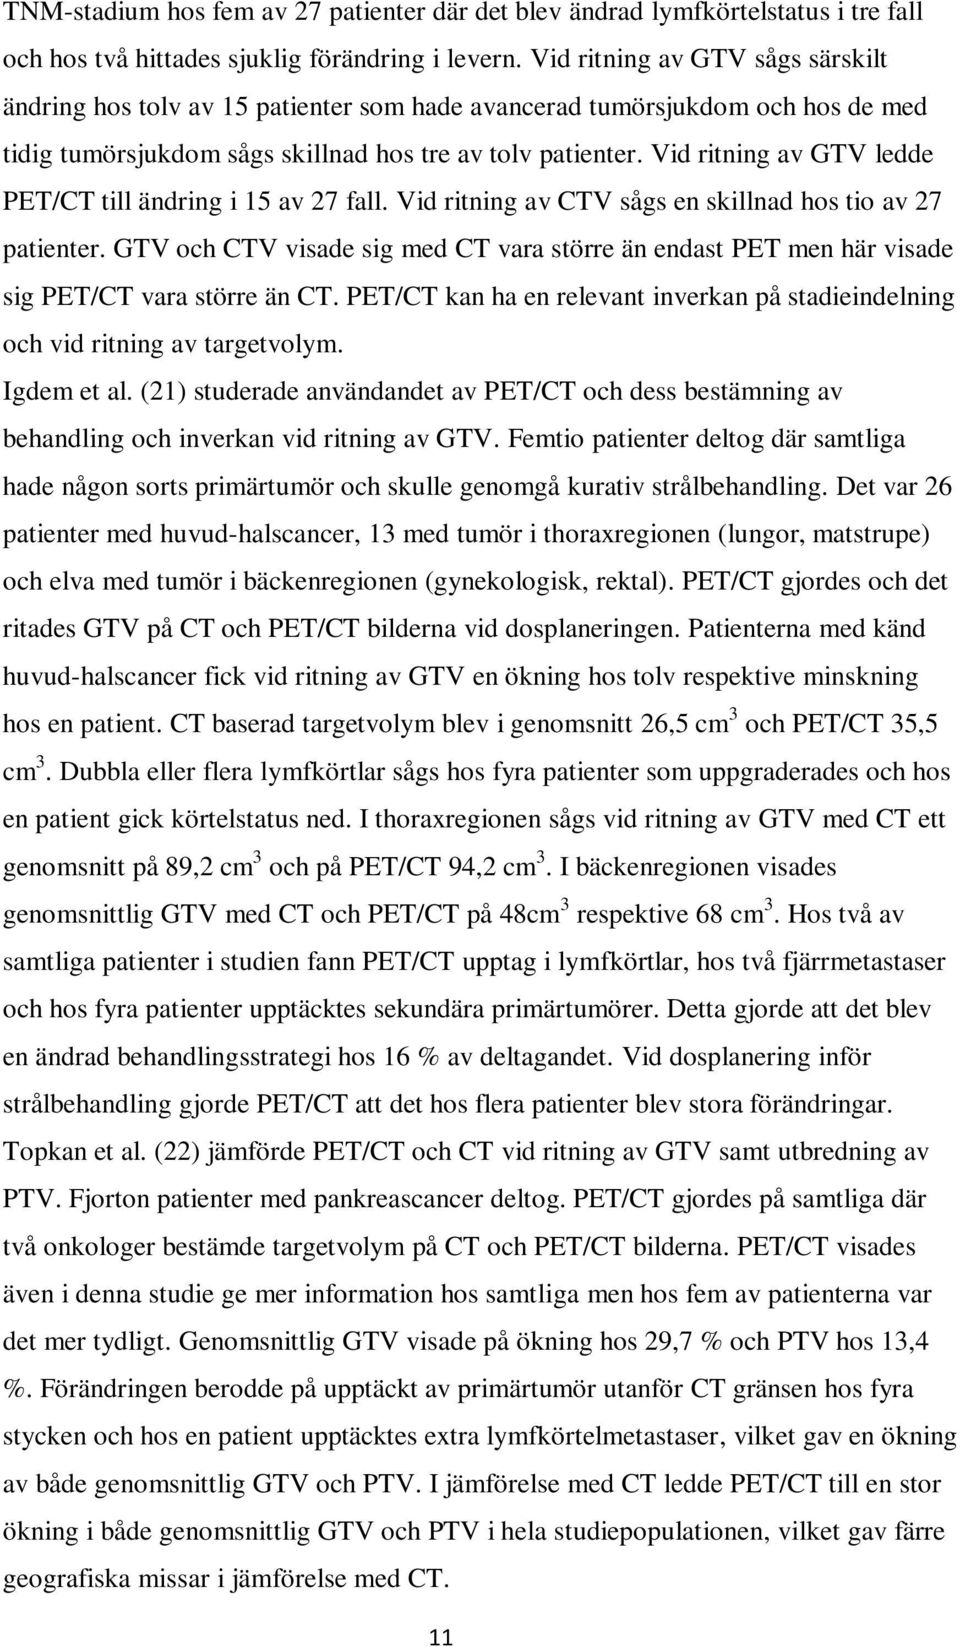 Vid ritning av GTV ledde PET/CT till ändring i 15 av 27 fall. Vid ritning av CTV sågs en skillnad hos tio av 27 patienter.